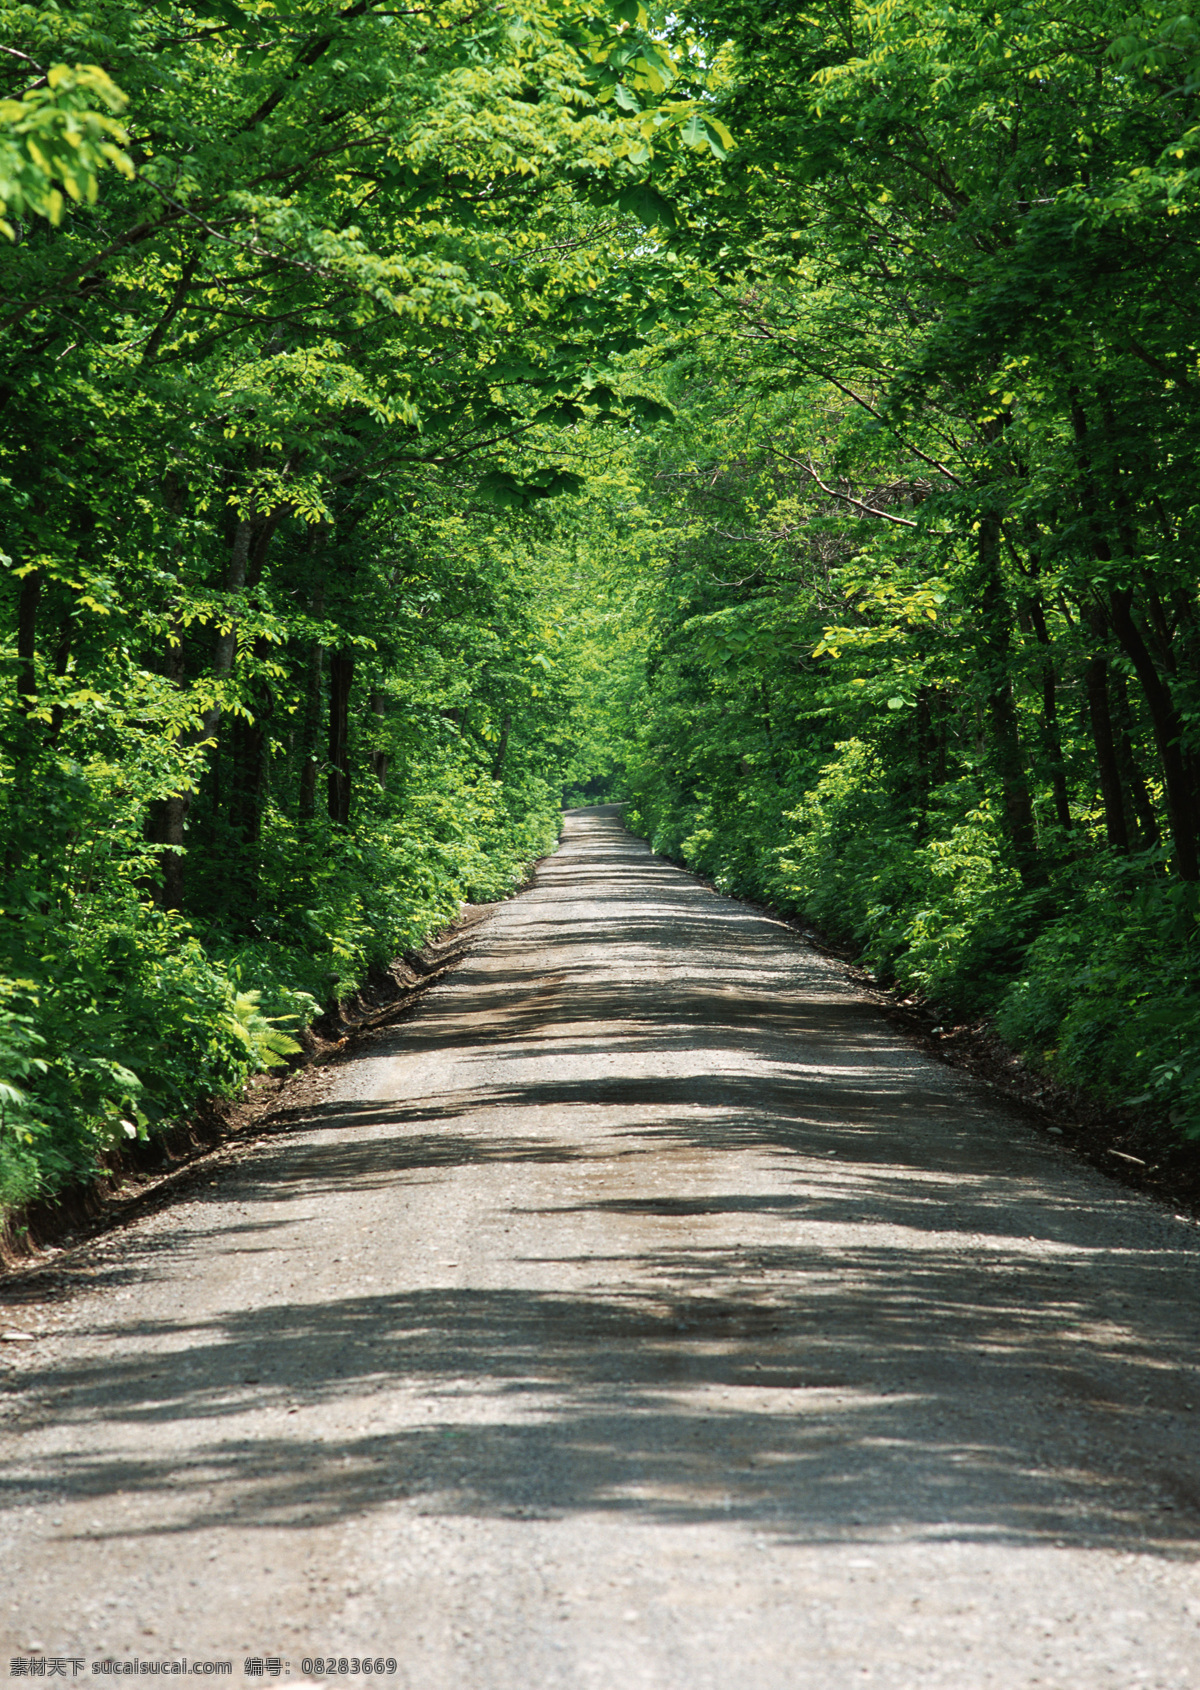 道路 素材图片 大树 植物 景区 自然风光 公路 道路摄影 交通 公路图片 环境家居